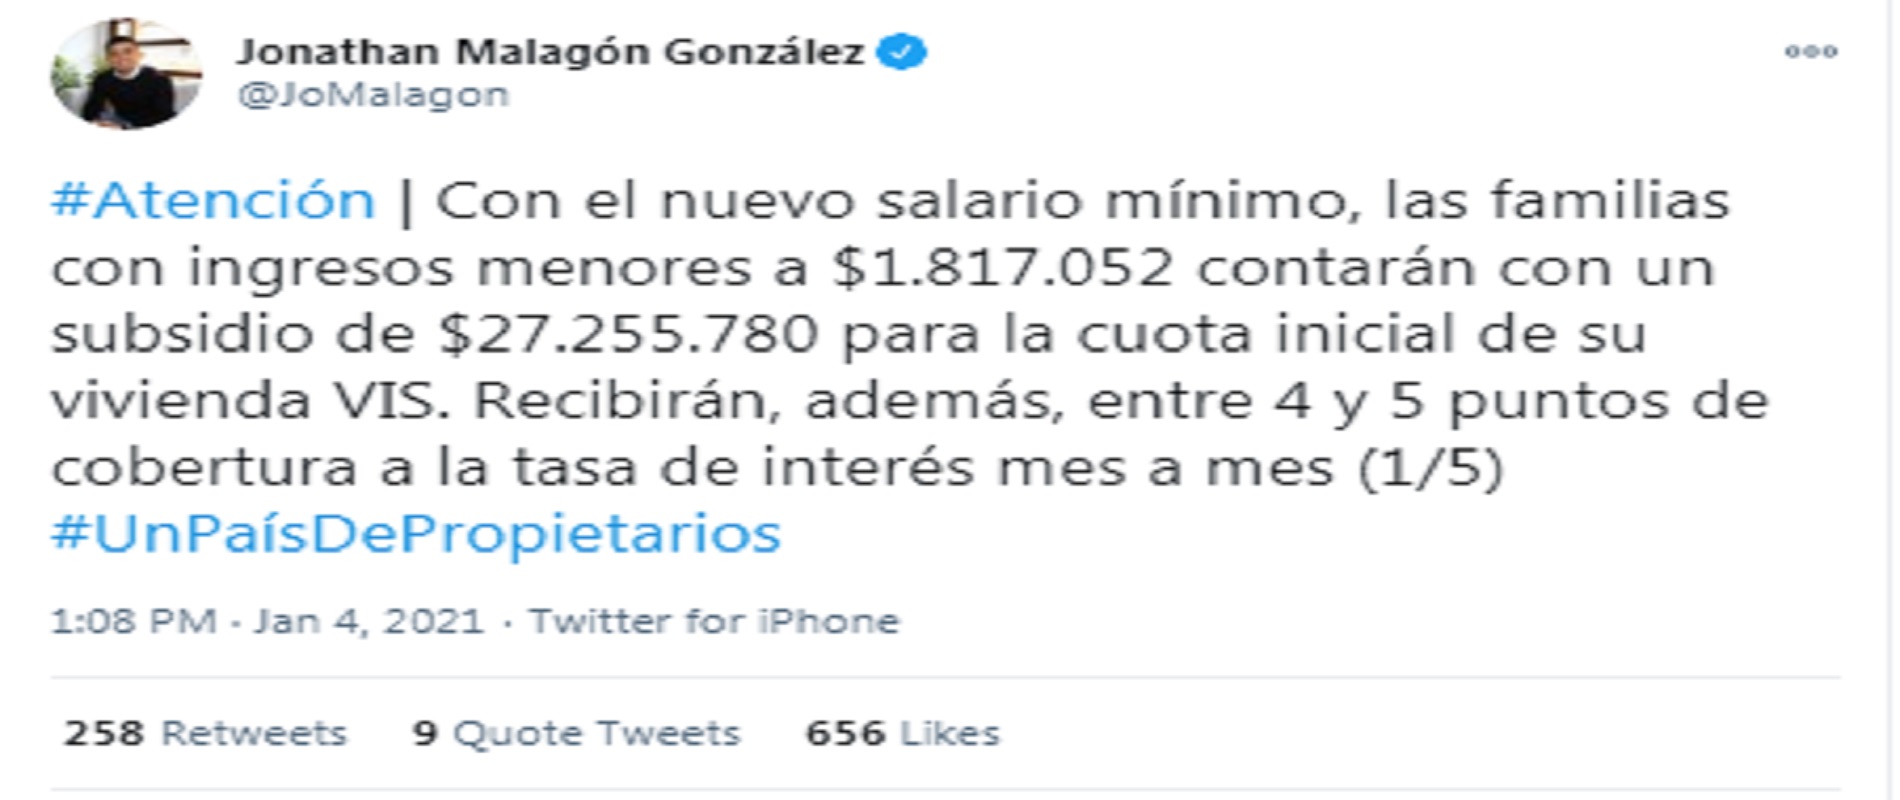 Minvivienda Malagón anunció tasa de subsidios para adquirir vivienda en Colombia.
Crédito Twitter @JoMalagon